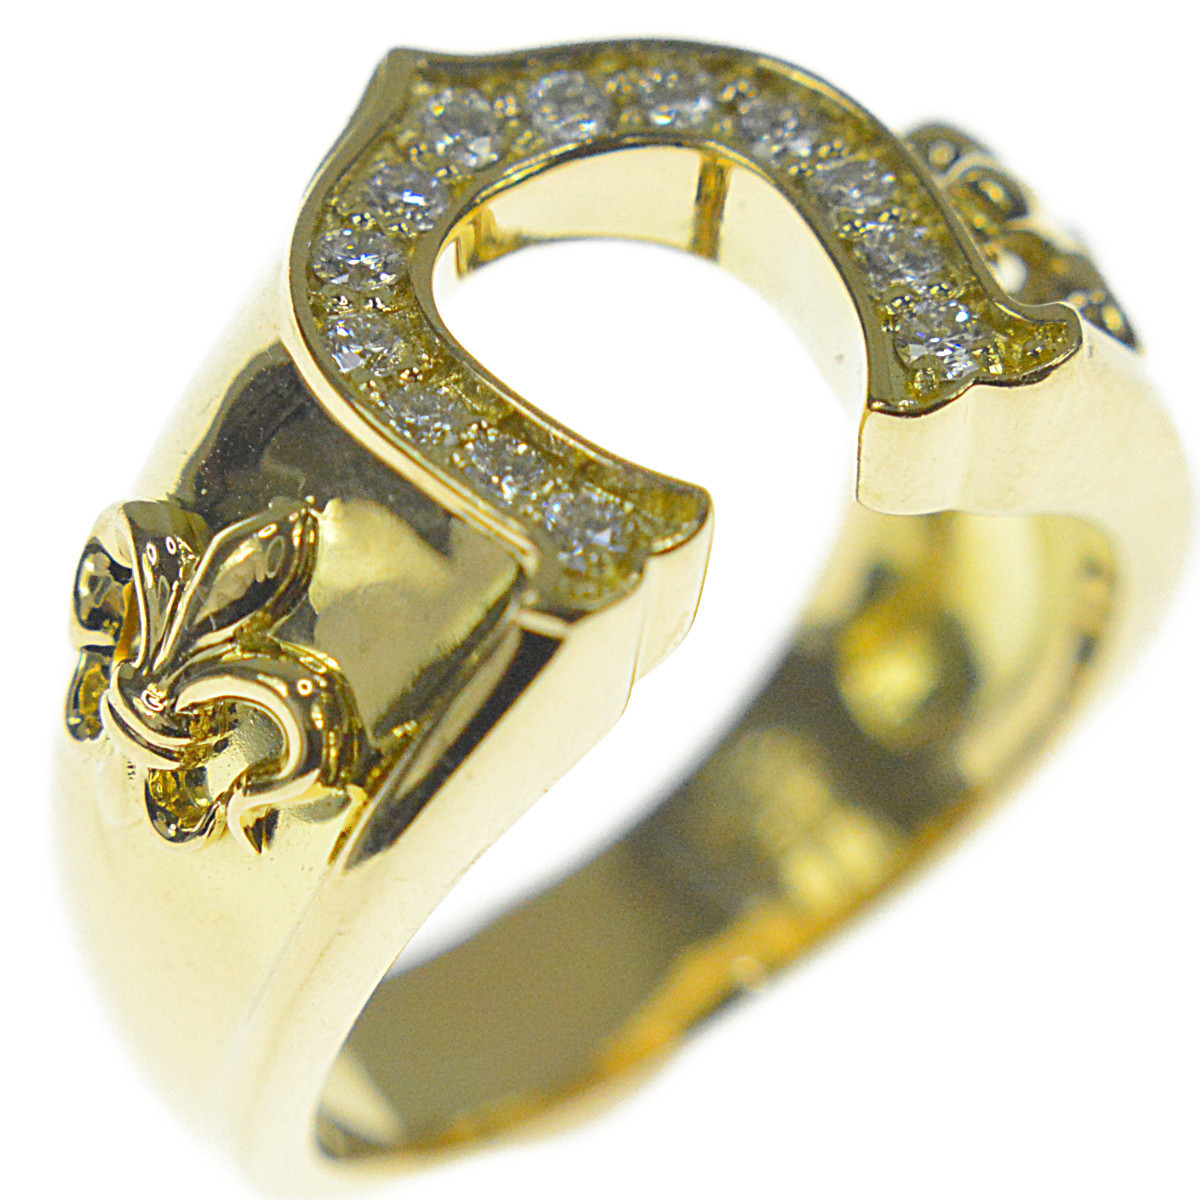 K18YG ダイヤモンド メンズ ジュエリー ホースシュー 馬蹄デザイン 指輪 幸運の象徴 21号 D0.33ct 16.4g